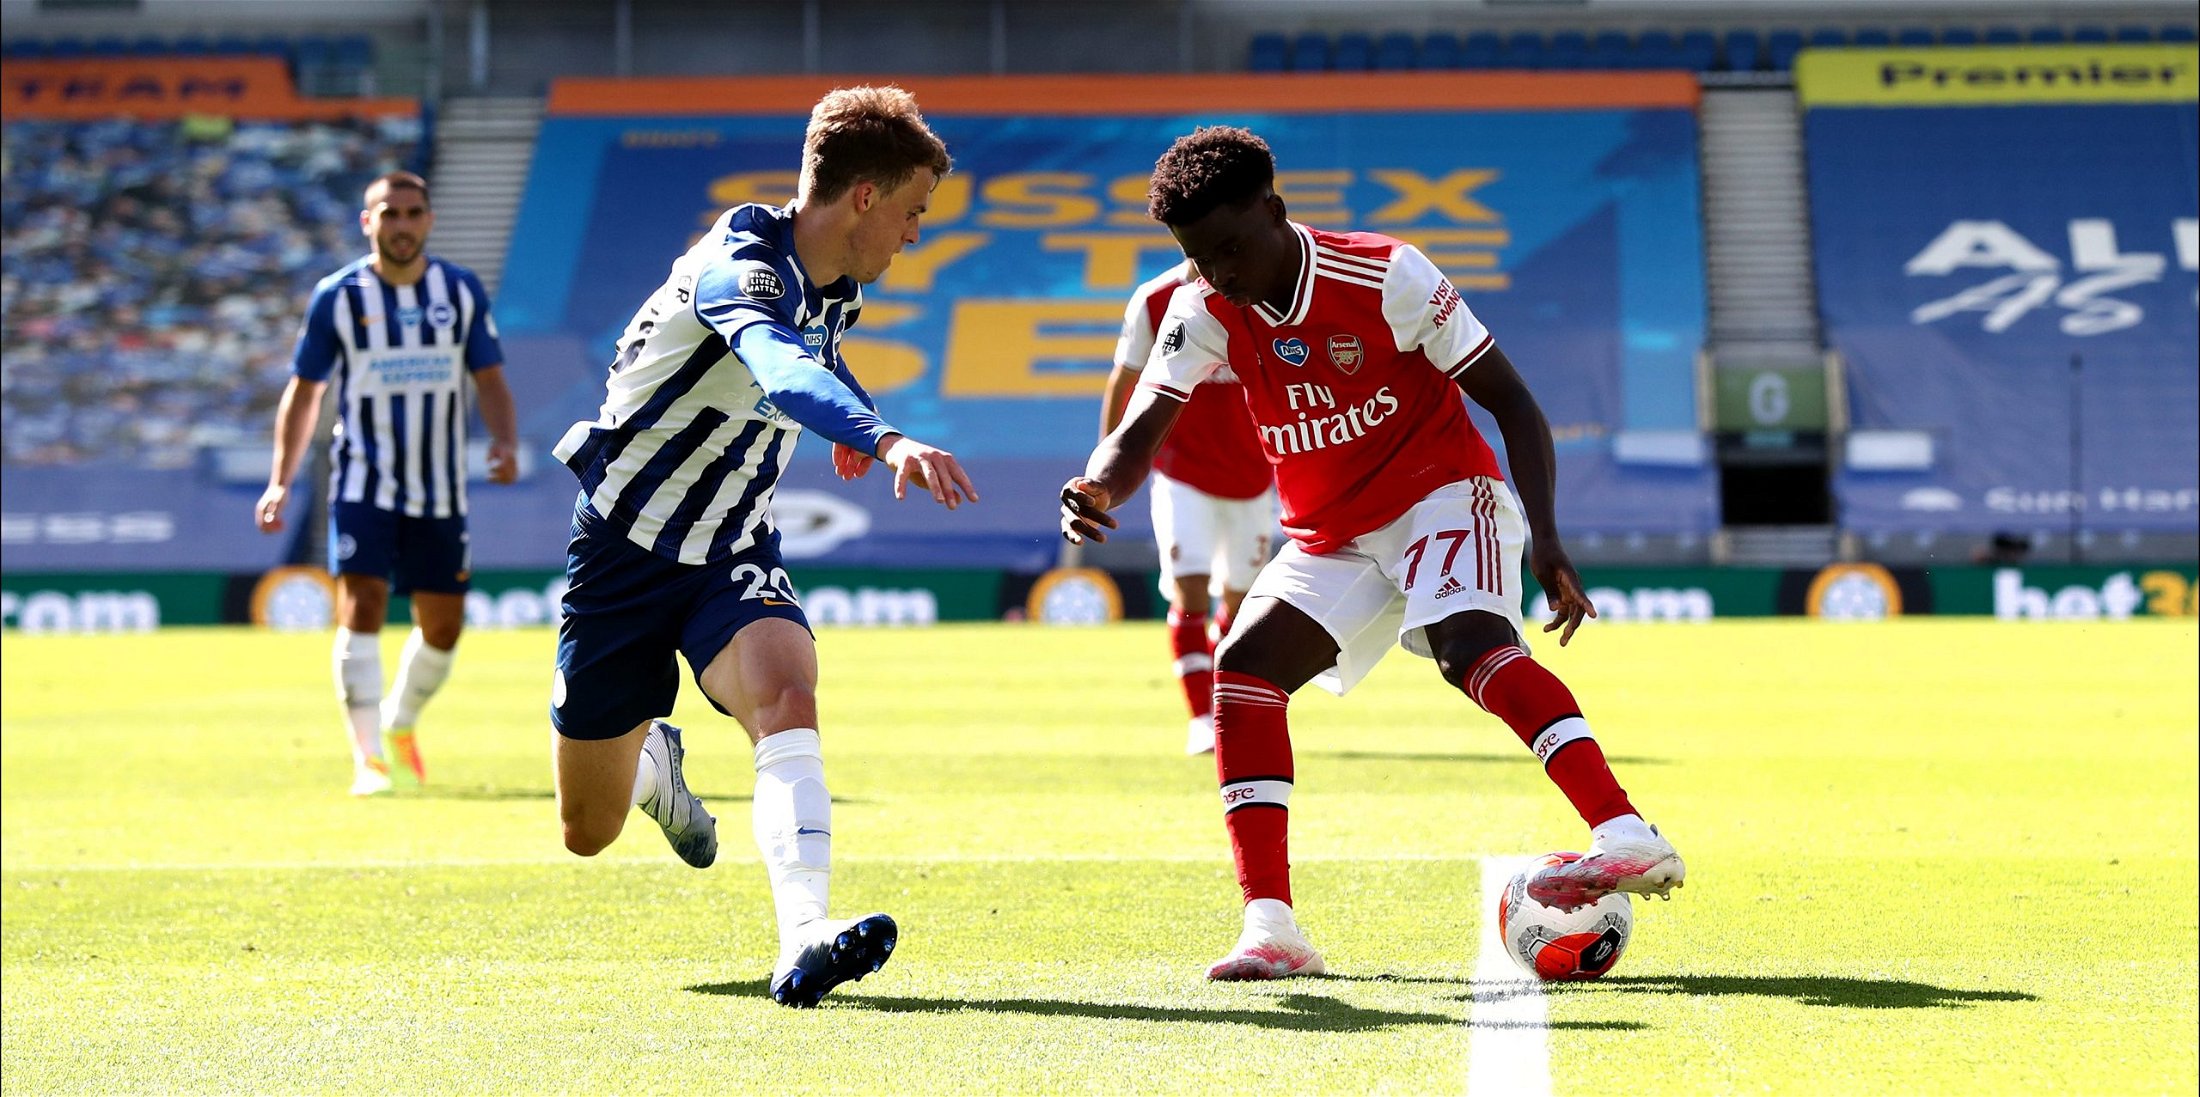 Liverpool show interest in signing Bukayo Saka - Read Arsenal